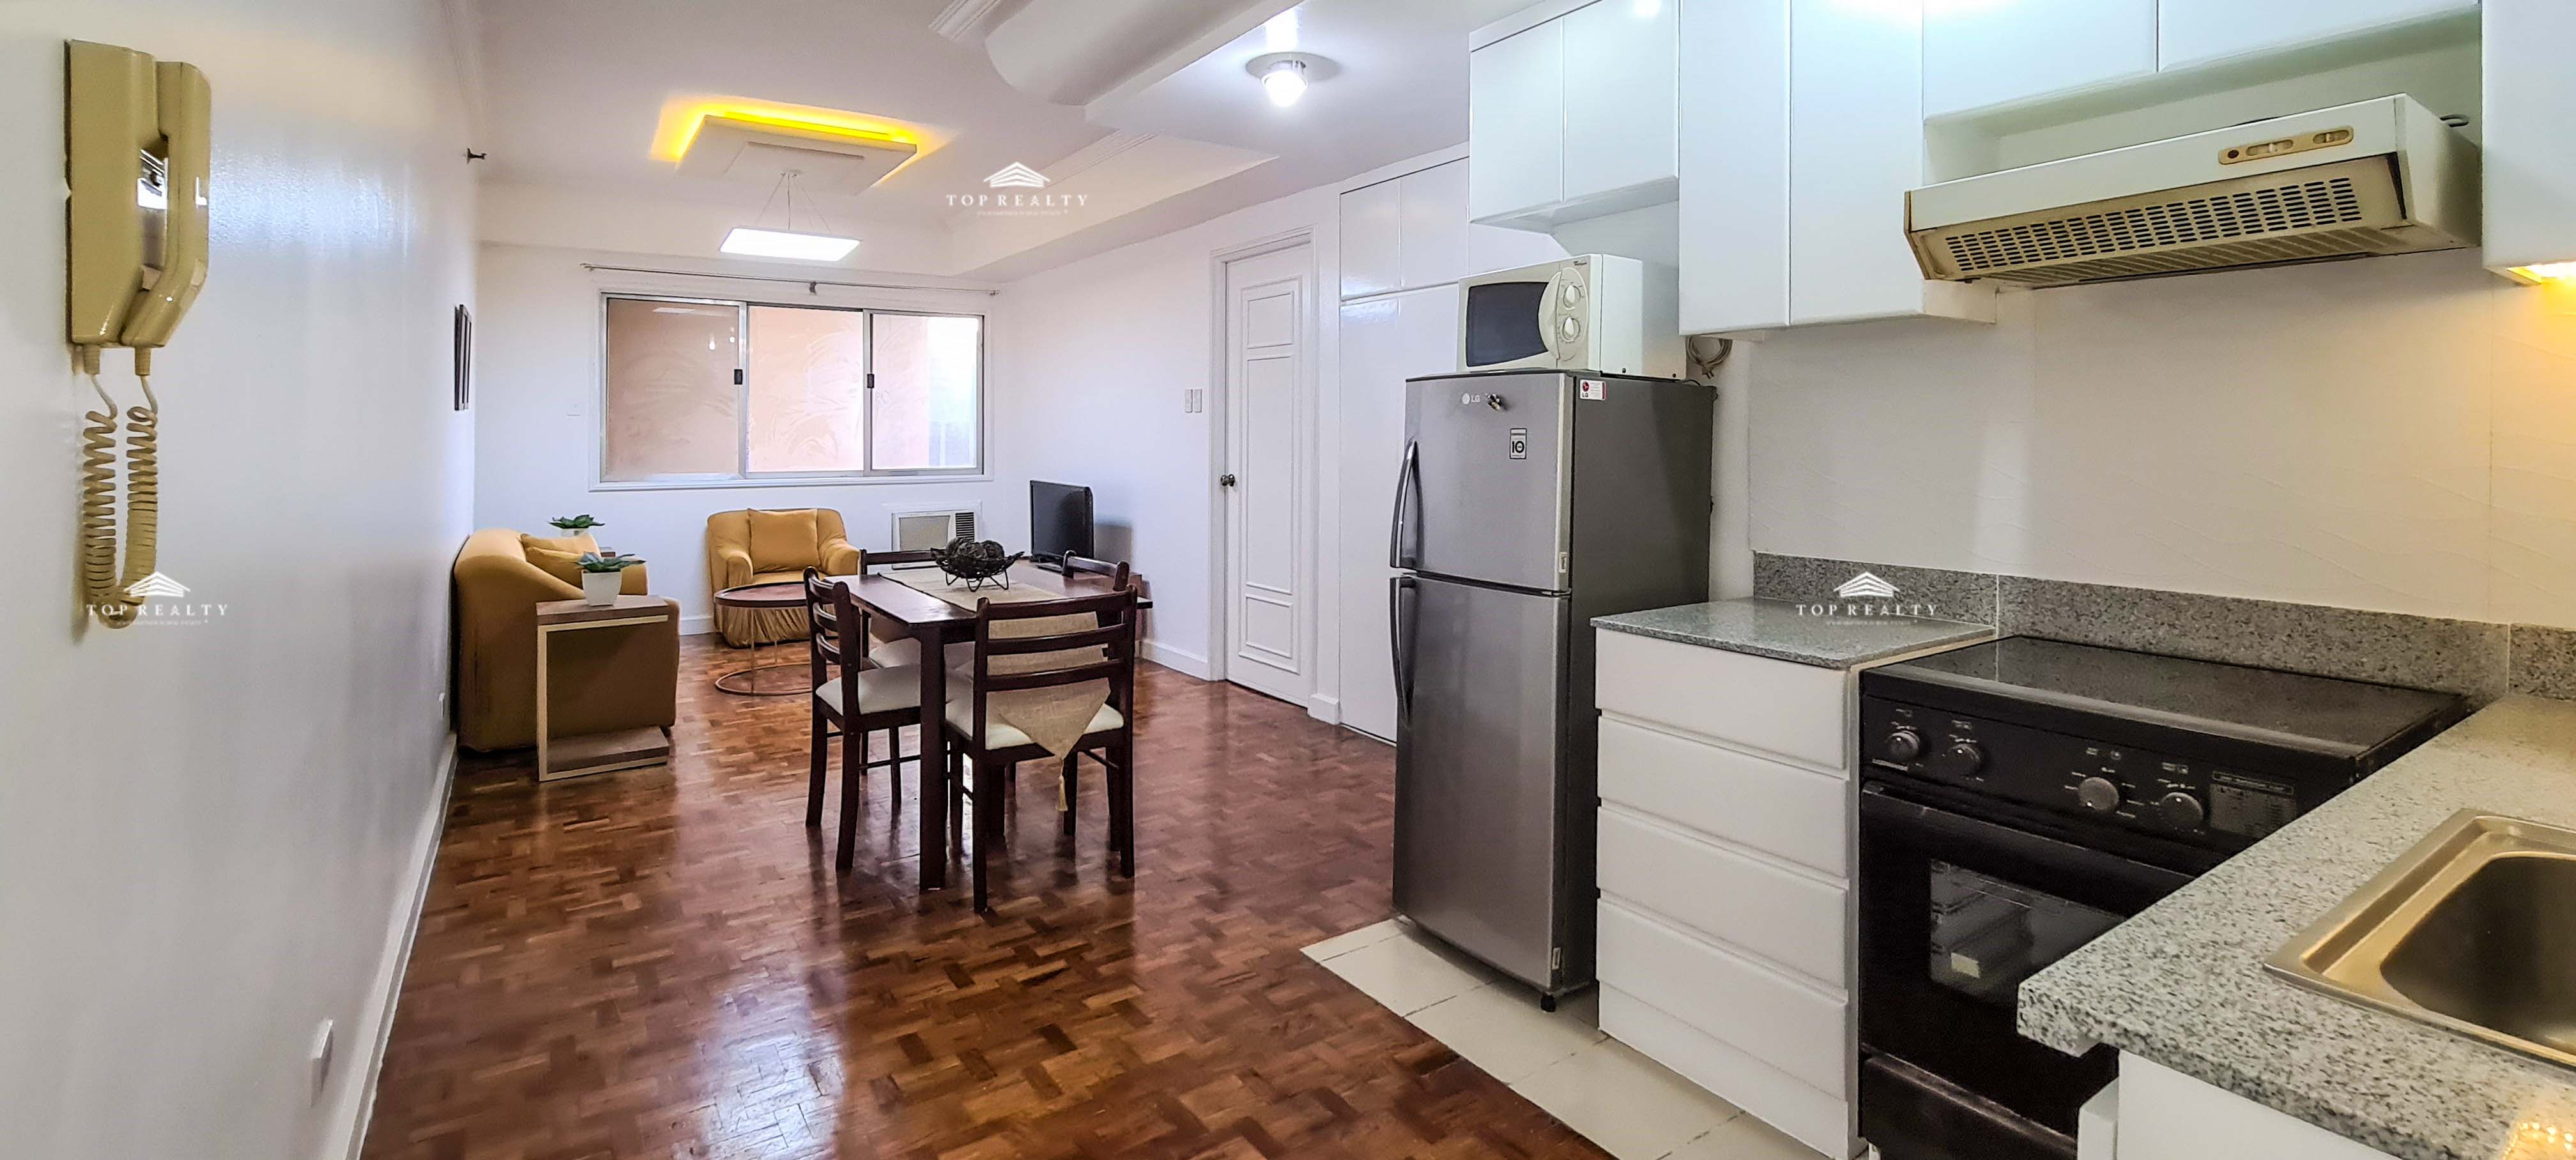 For Rent: 1 Bedroom Condominium for Rent in Nobel Plaza, Salcedo Village, Makati City